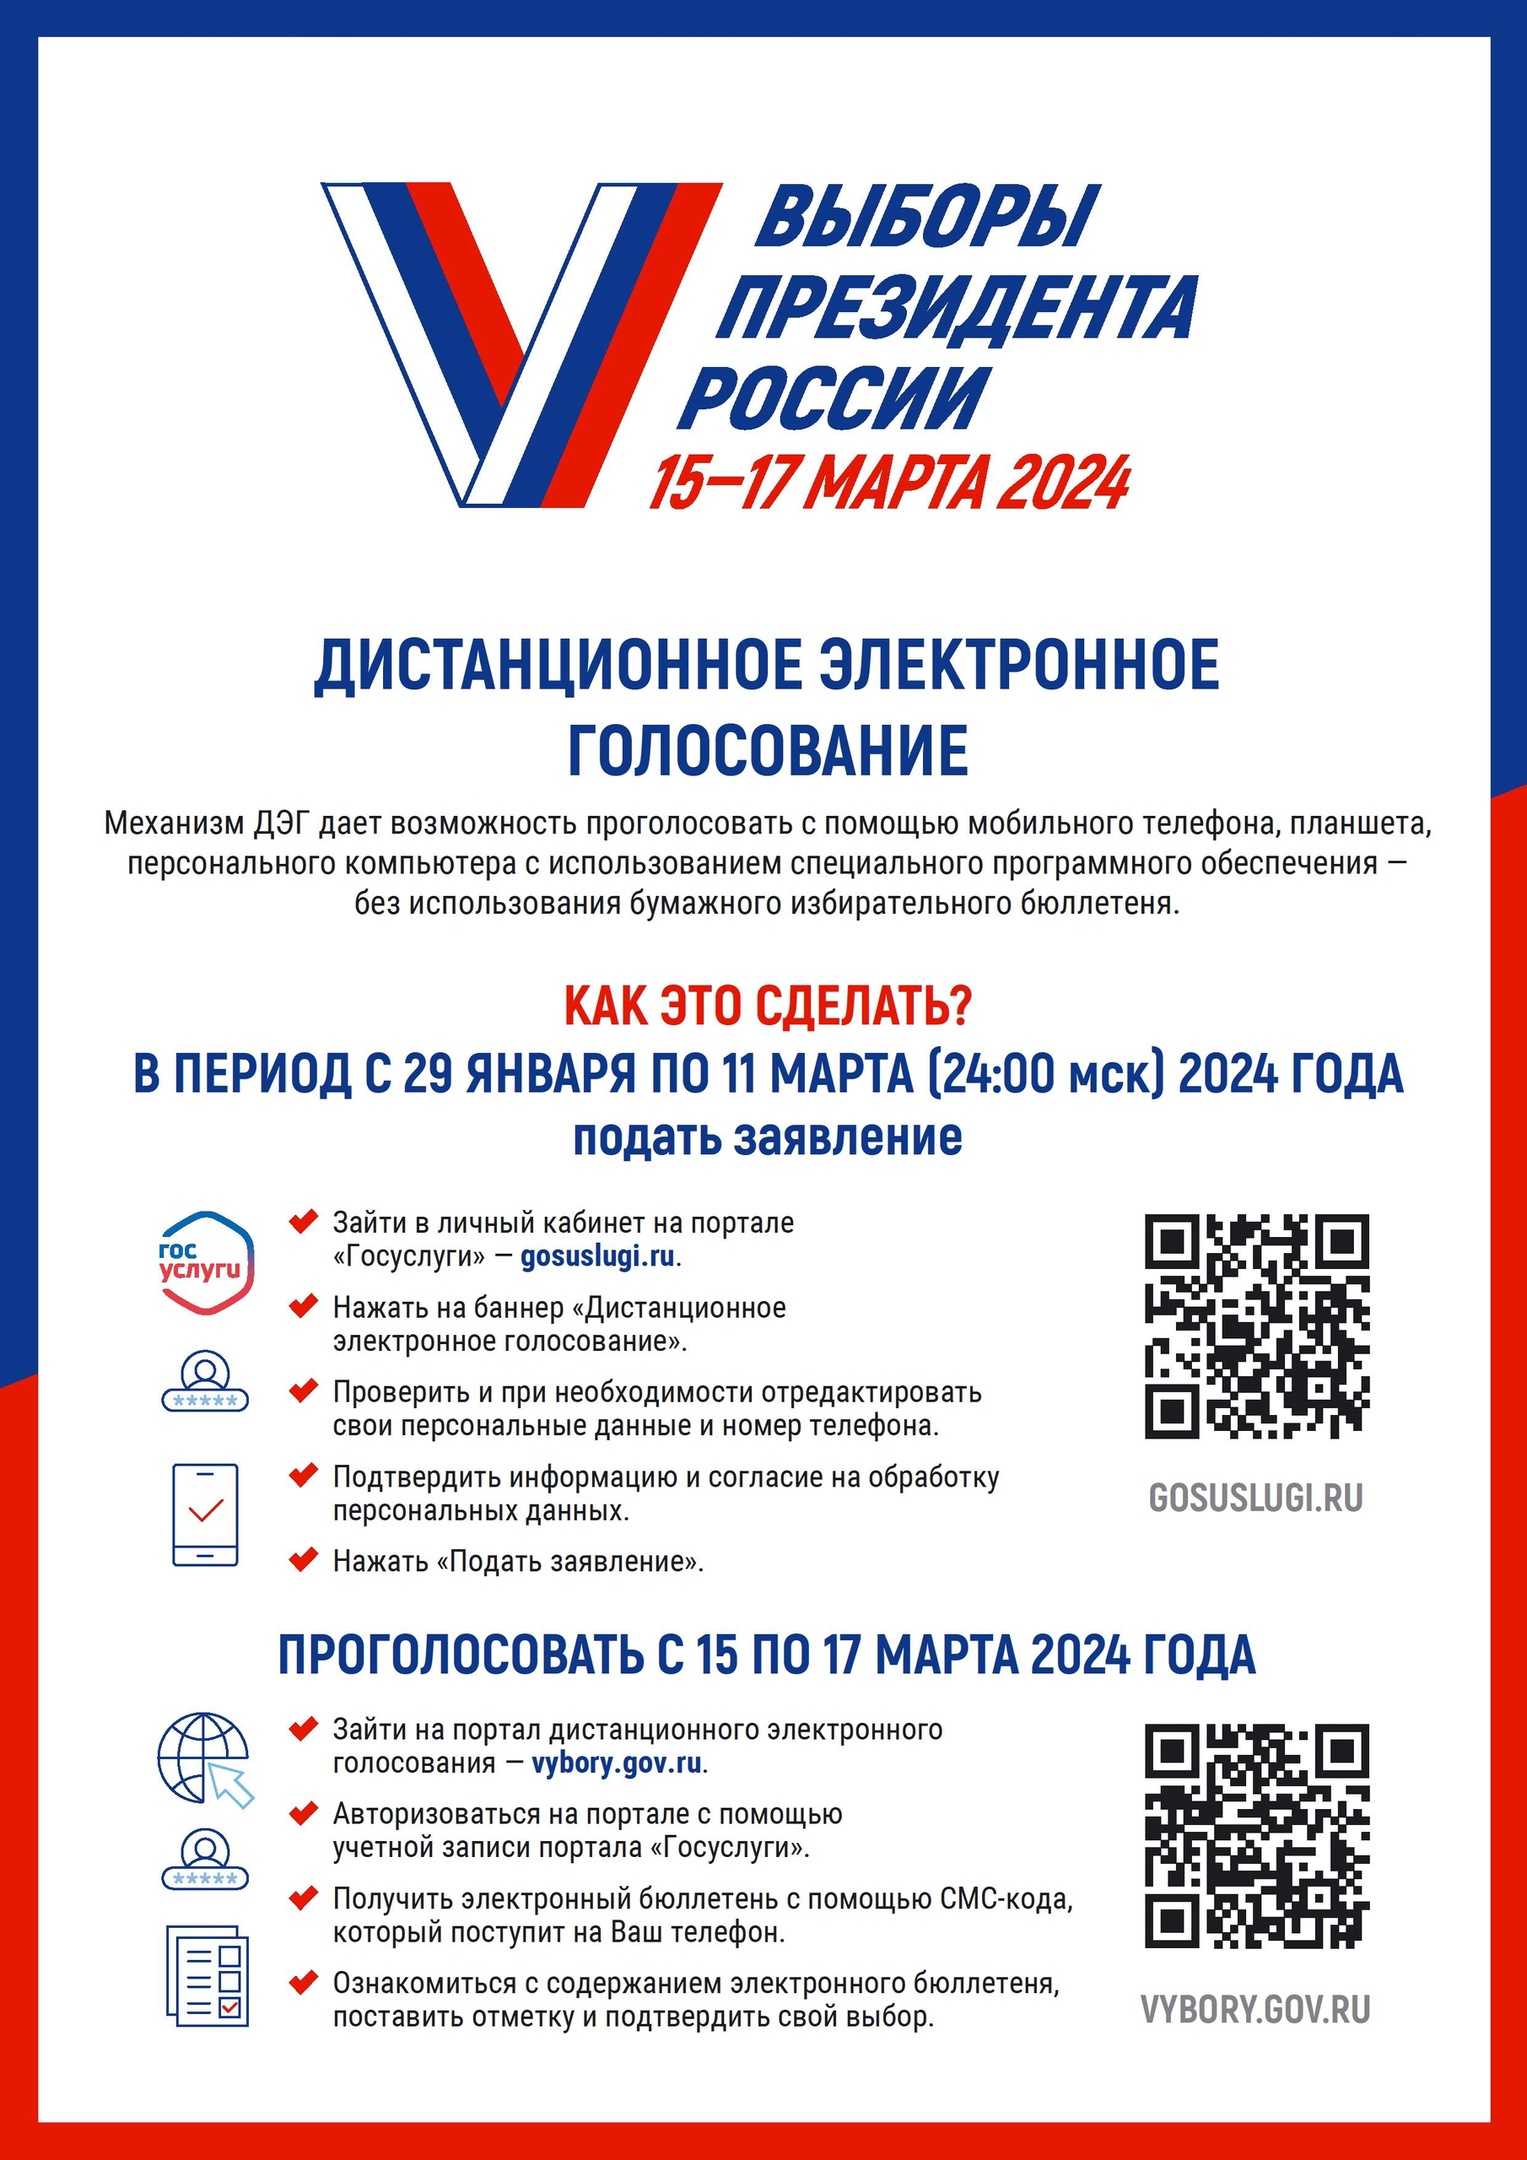 5 и 6 марта нижегородцы смогут принять участие в тестовом дистанционном электронном голосовании